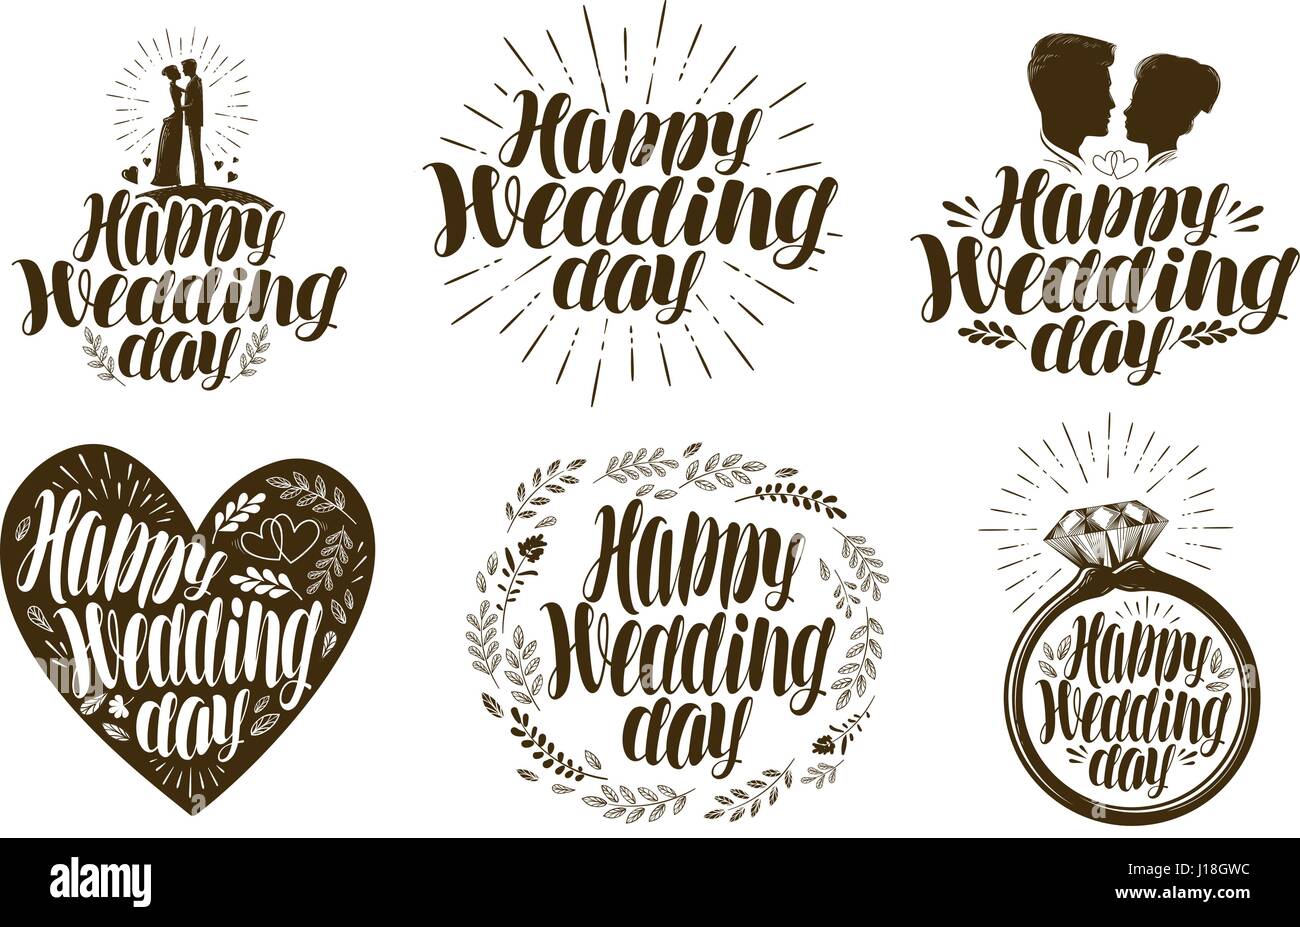 Happy Hochzeitstag, Beschriftungssatz. Verheiratetes Paar, Liebe, Symbol oder Logo. Schriftzug-Vektor-illustration Stock Vektor